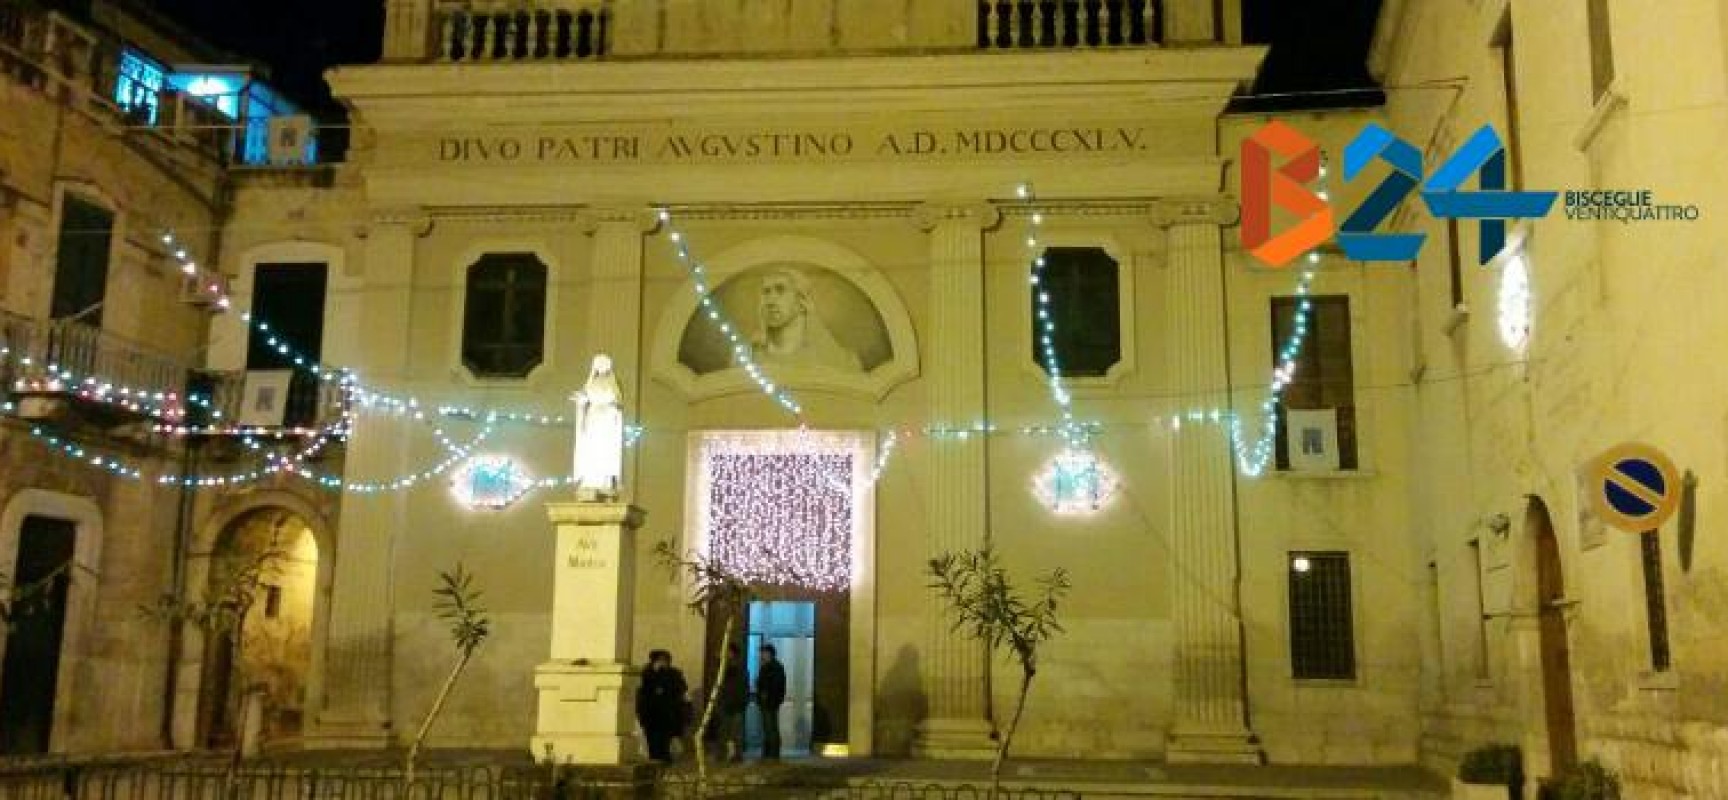 Solenni celebrazioni e festeggiamenti alla parrocchia di S. Agostino